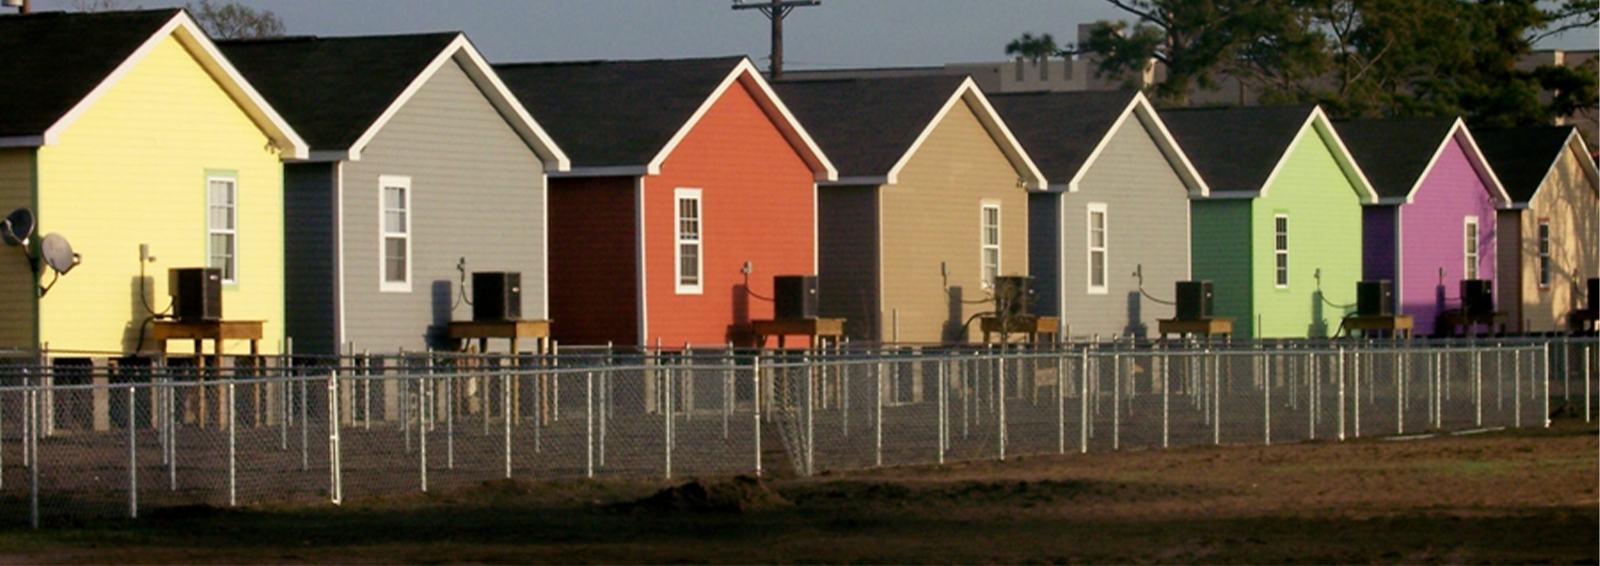 row houses